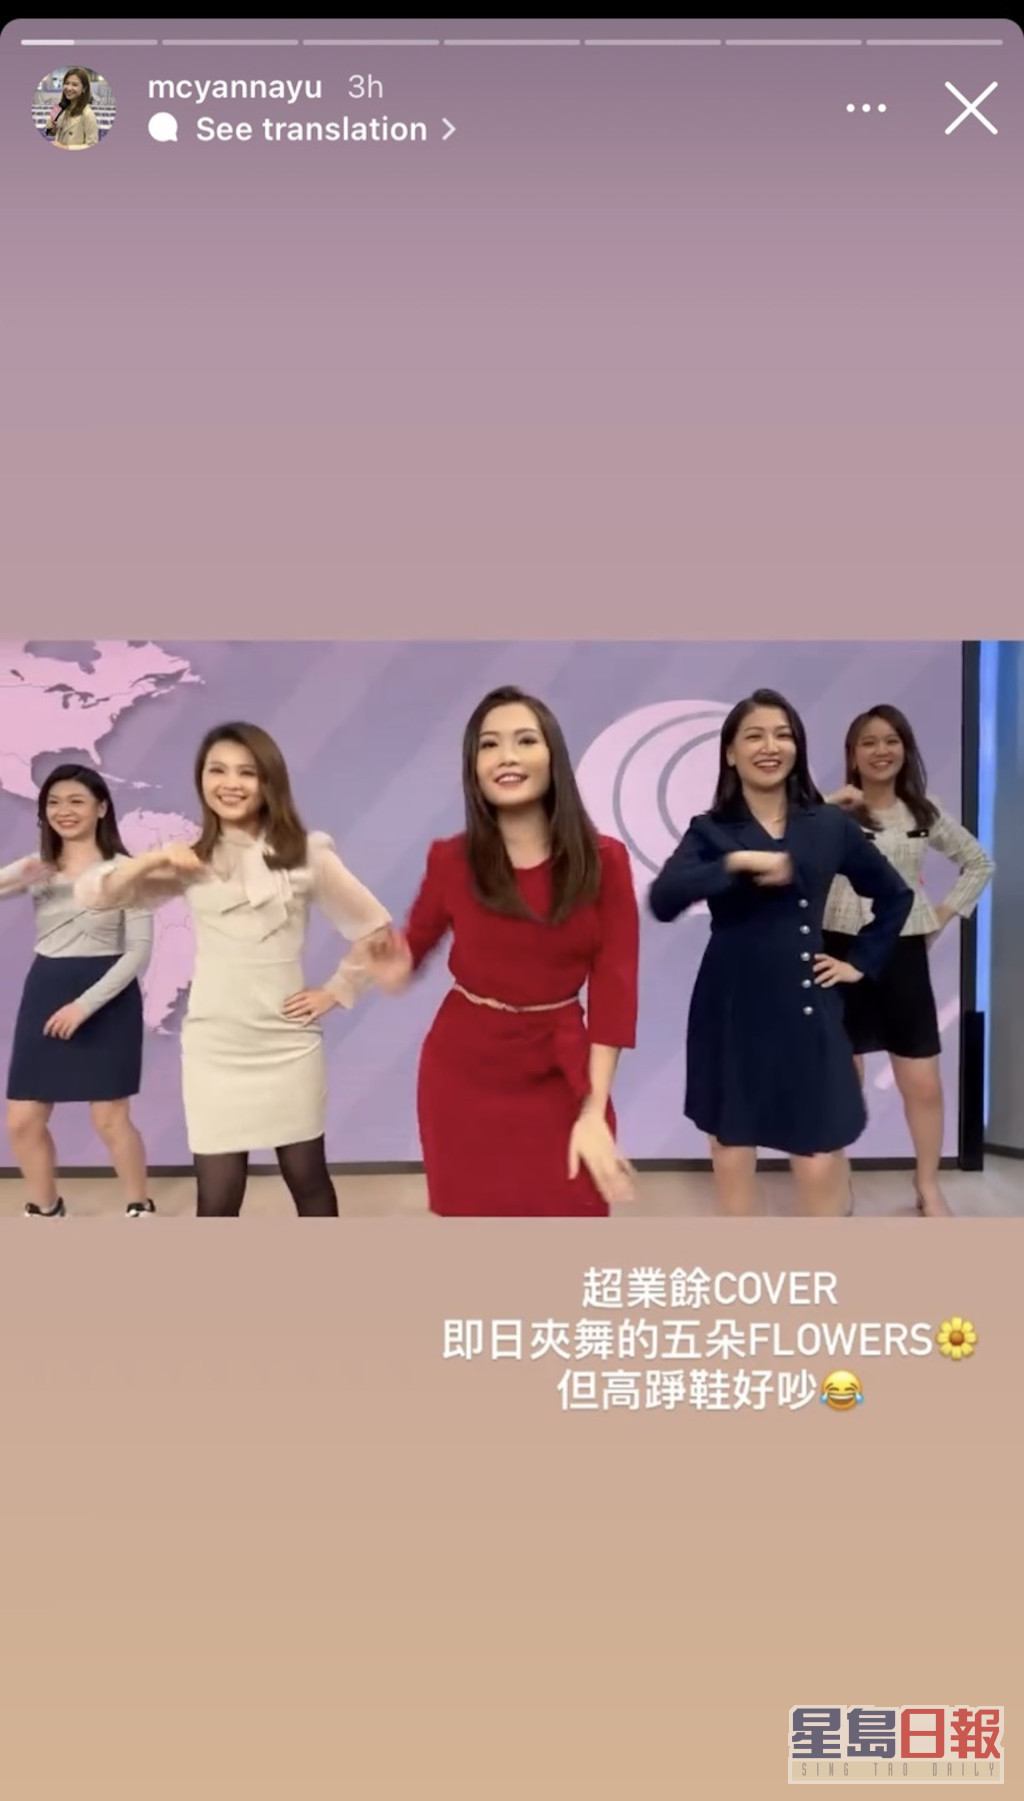 余茵娜（左二）于社交网分享影片并写道：「超业馀Cover，即日夹舞的五朵Flowers，但高踭鞋好吵。」